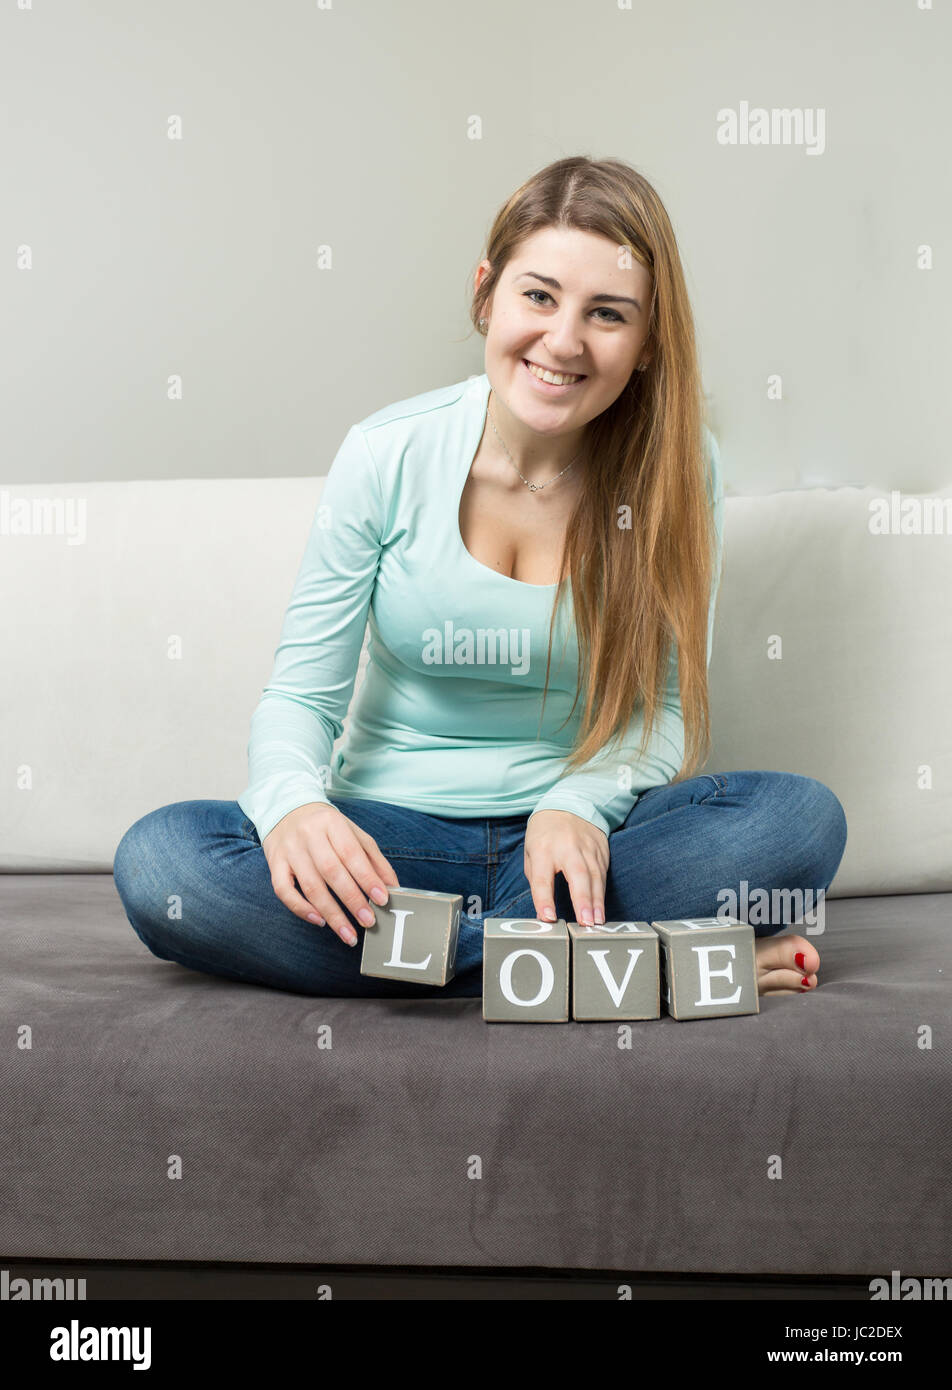 Jolie jeune femme rendant le mot 'Amour' de briques sur canapé Banque D'Images